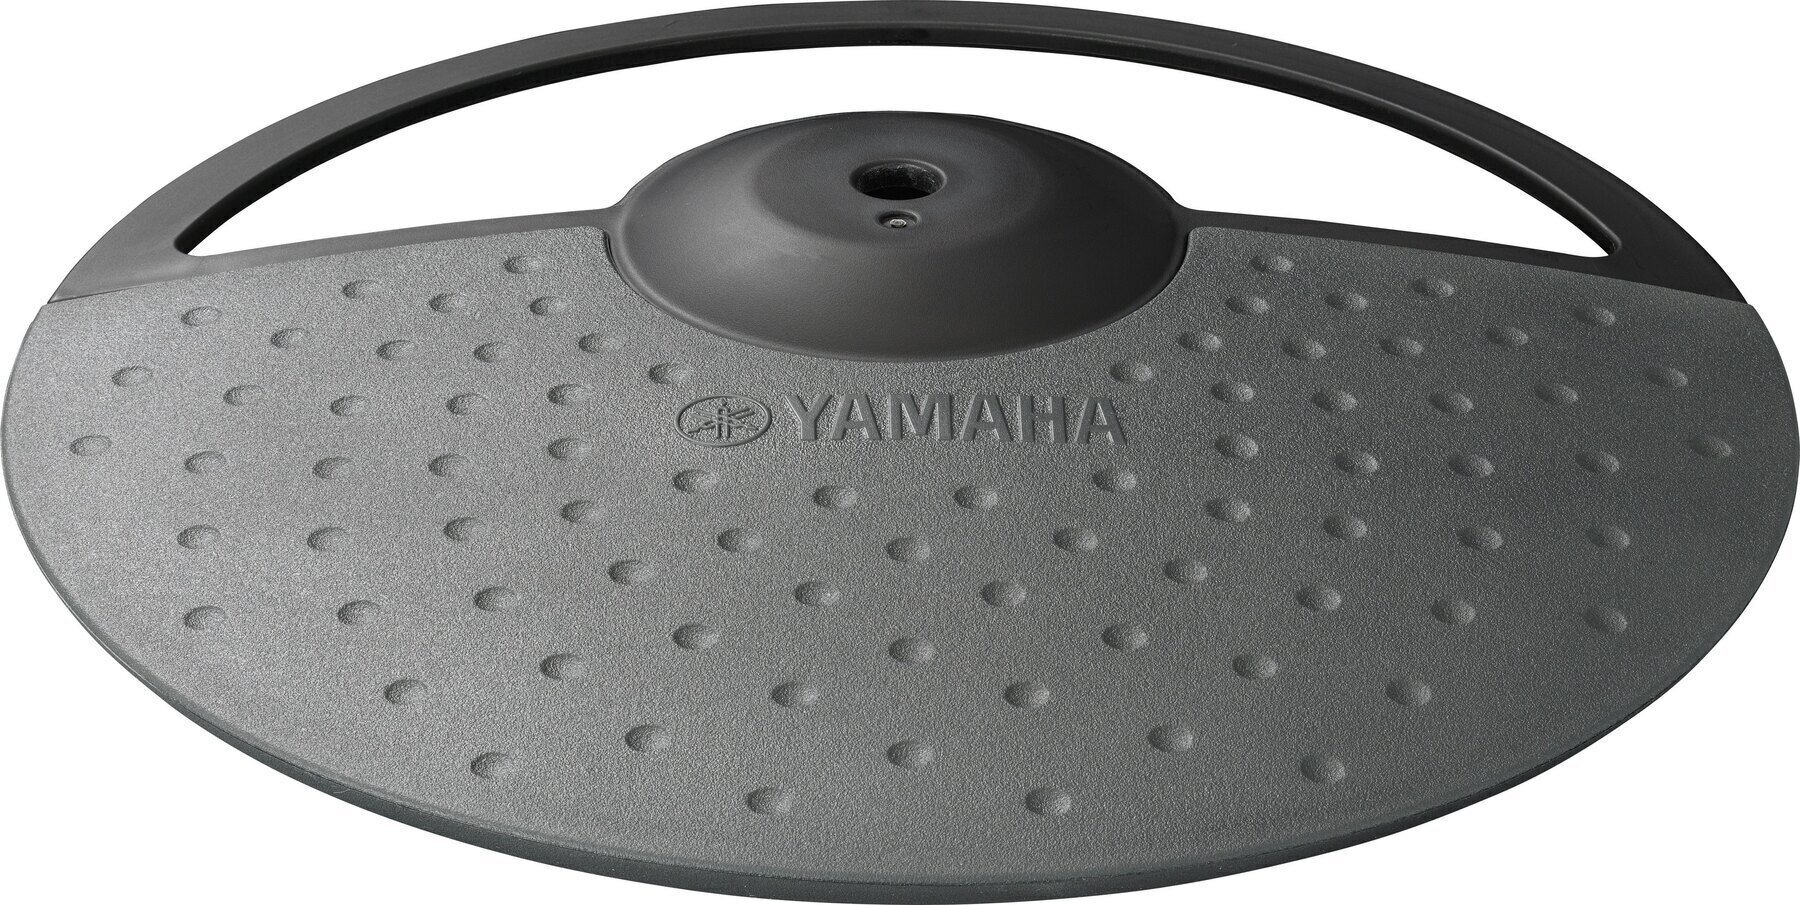 Elektronisch drumpad Yamaha PCY 90 Cymbal pad